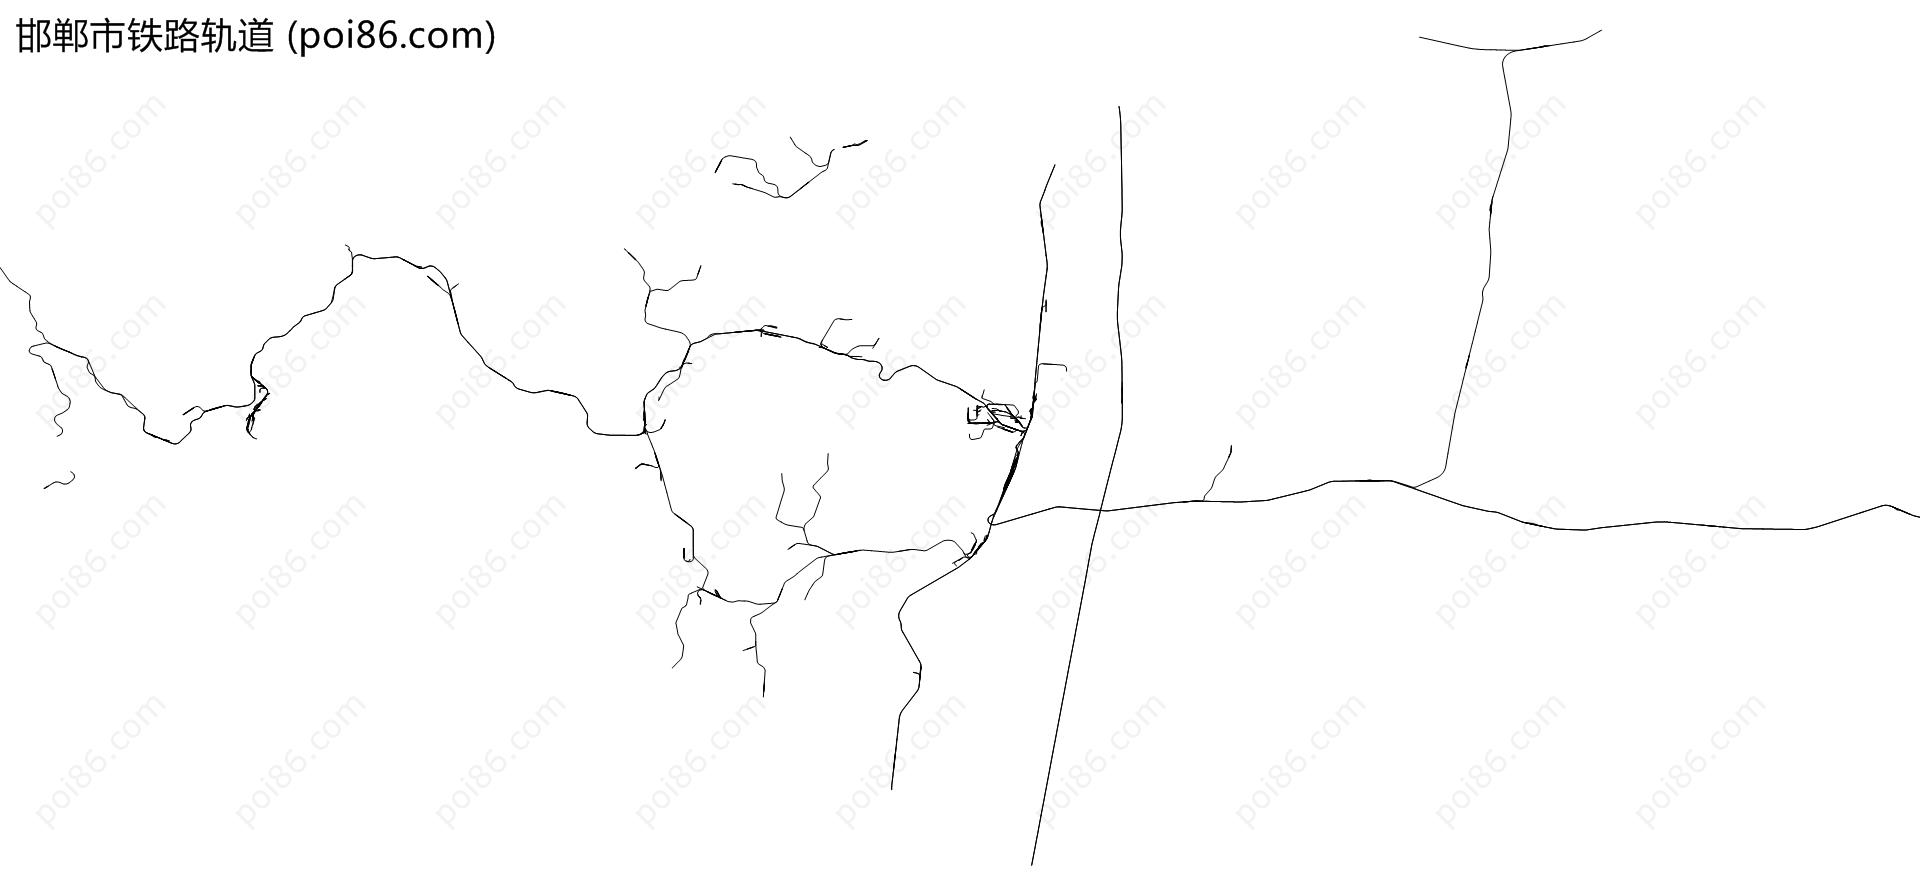 邯郸市铁路轨道地图